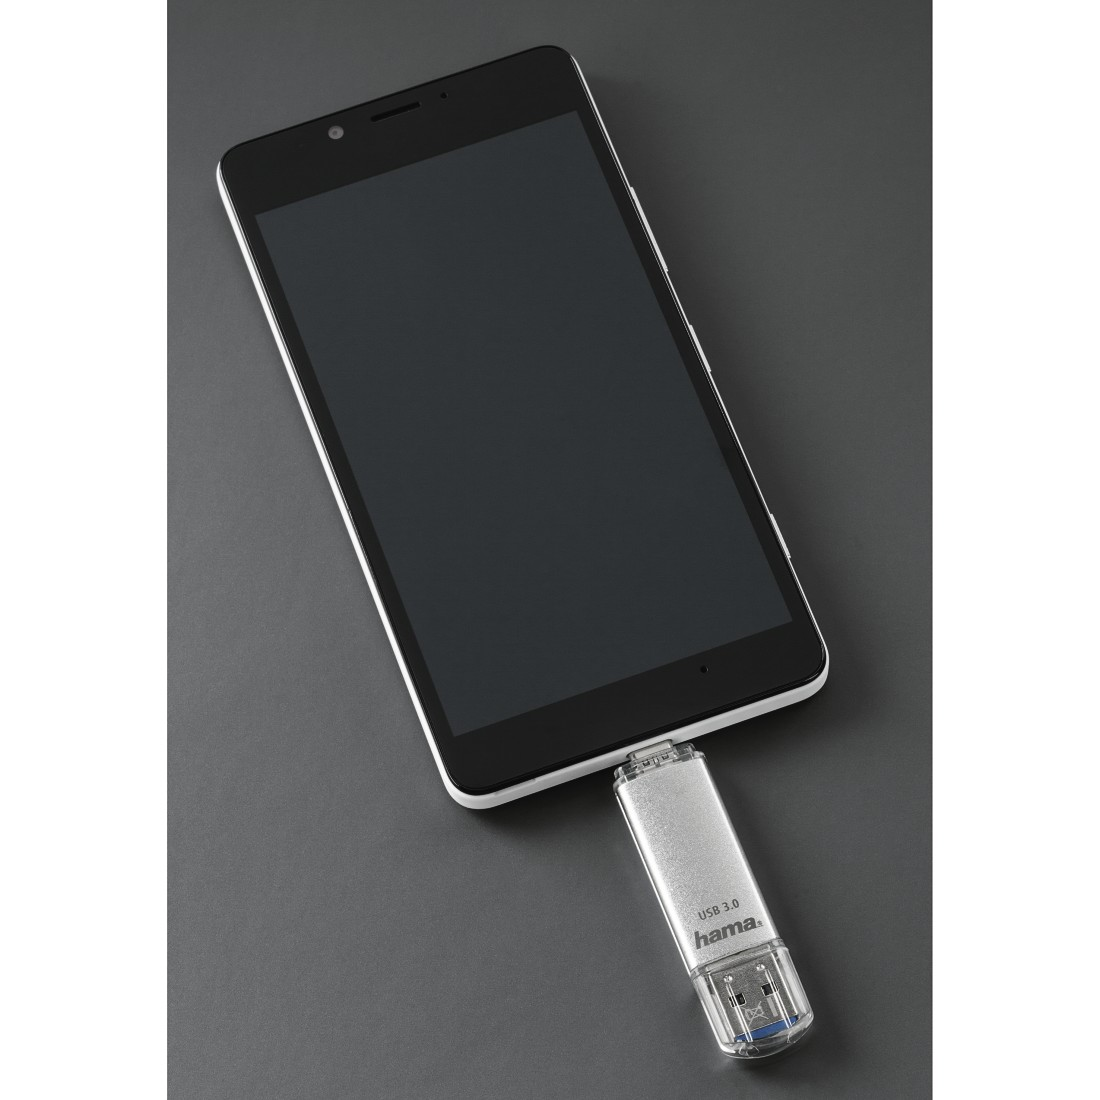 HAMA MB/s, C-Laeta 64 40 USB-Stick, Silber GB,